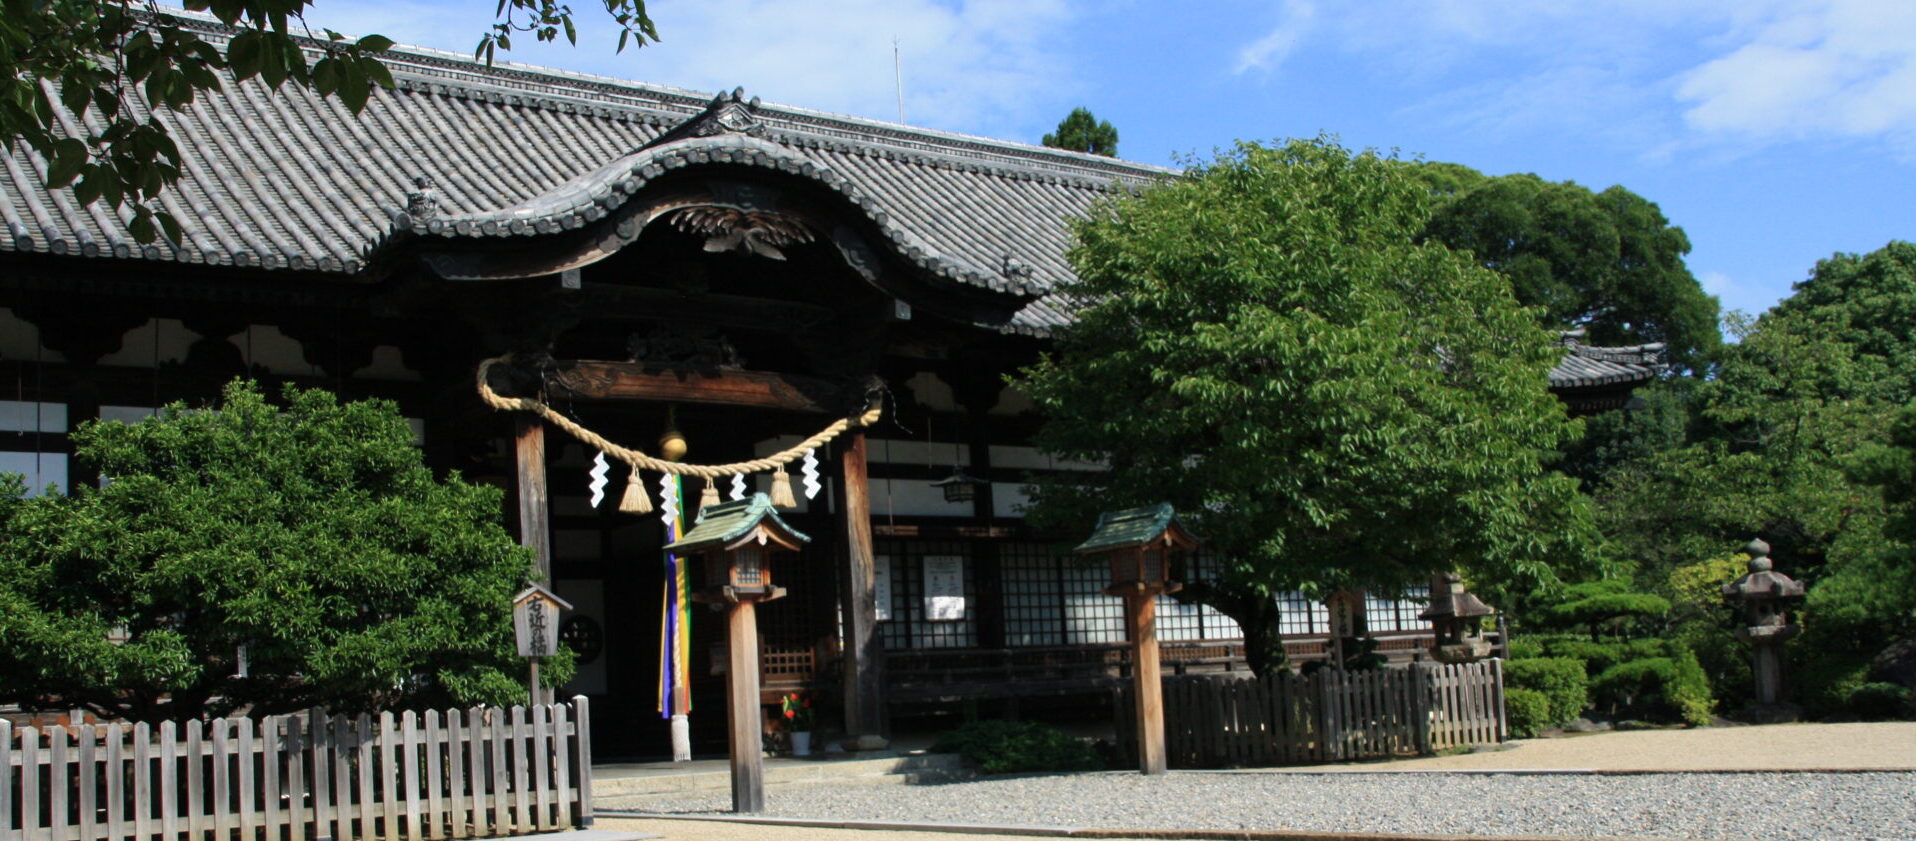 誉田八幡宮拝殿を左斜めから撮影した様子が映っています。